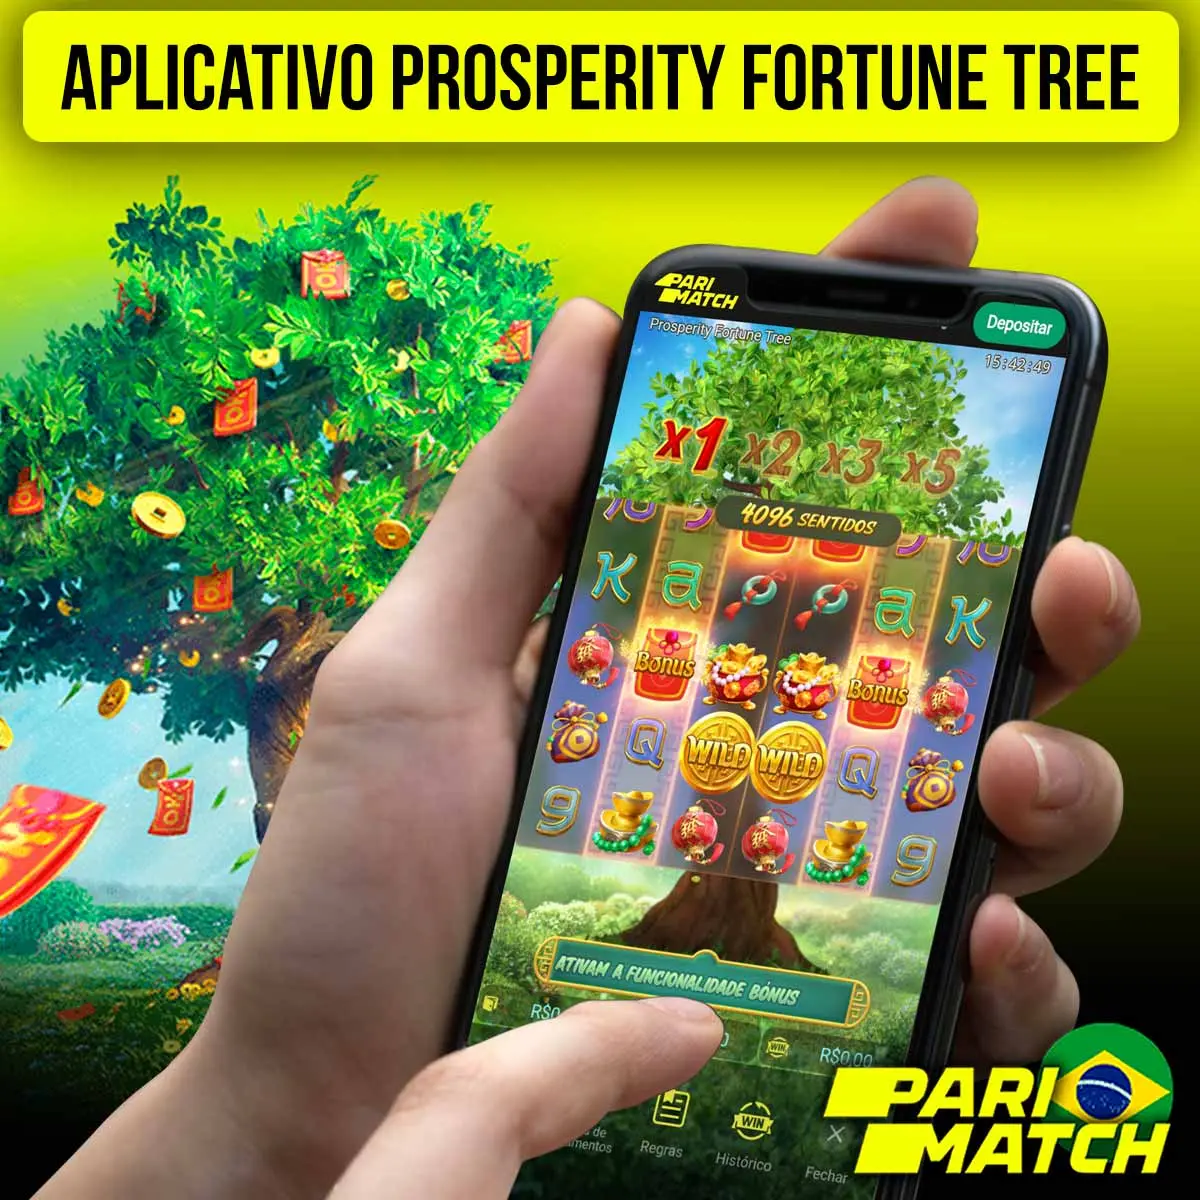 Aplicativo da Parimatch para jogar Prosperity Fortune Tree